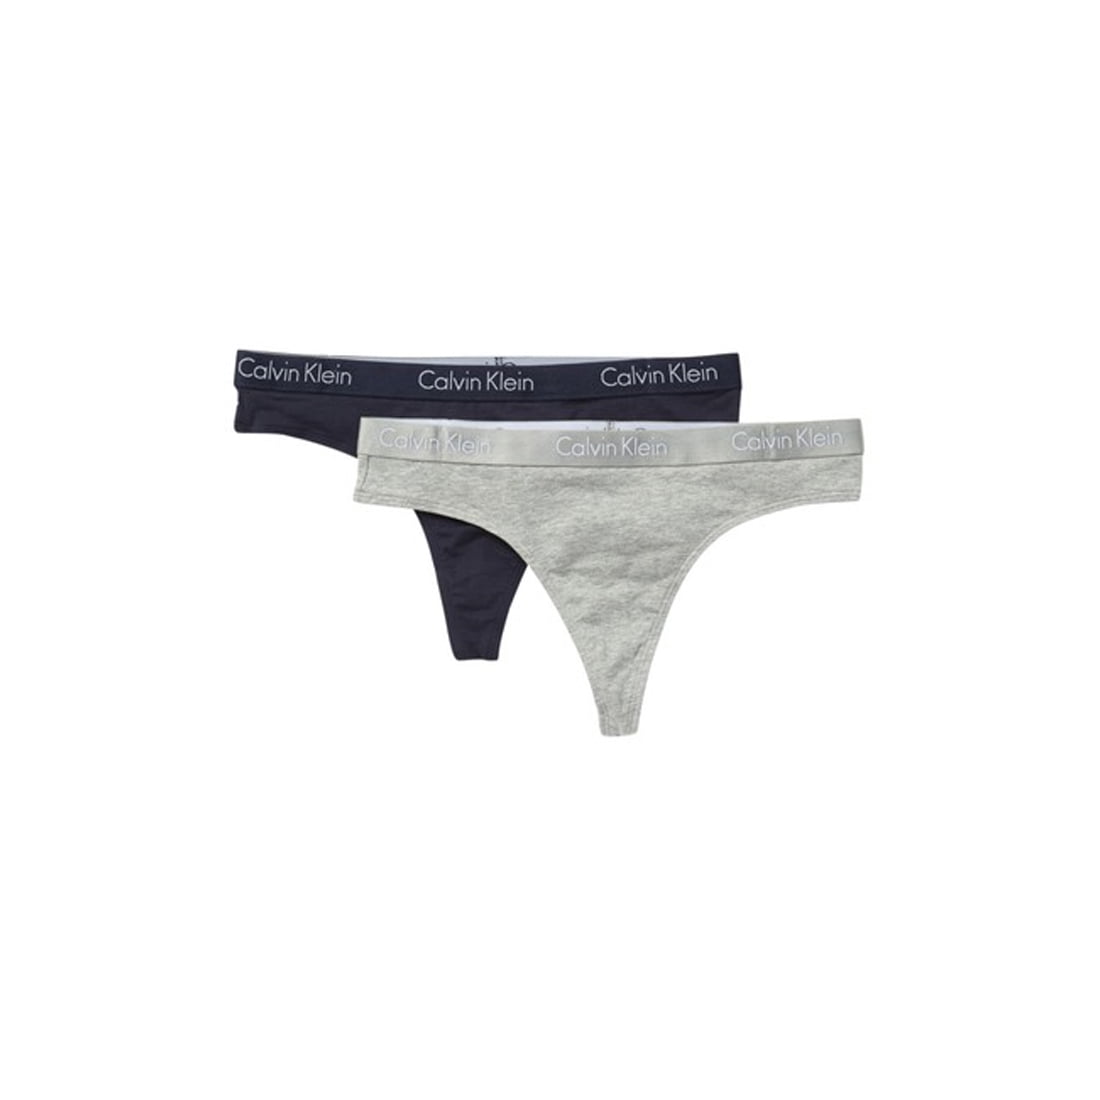 Kostuums negeren perspectief Calvin Klein Underwear Women's 2 Pack Thong, Navy/Grey, S - Walmart.com